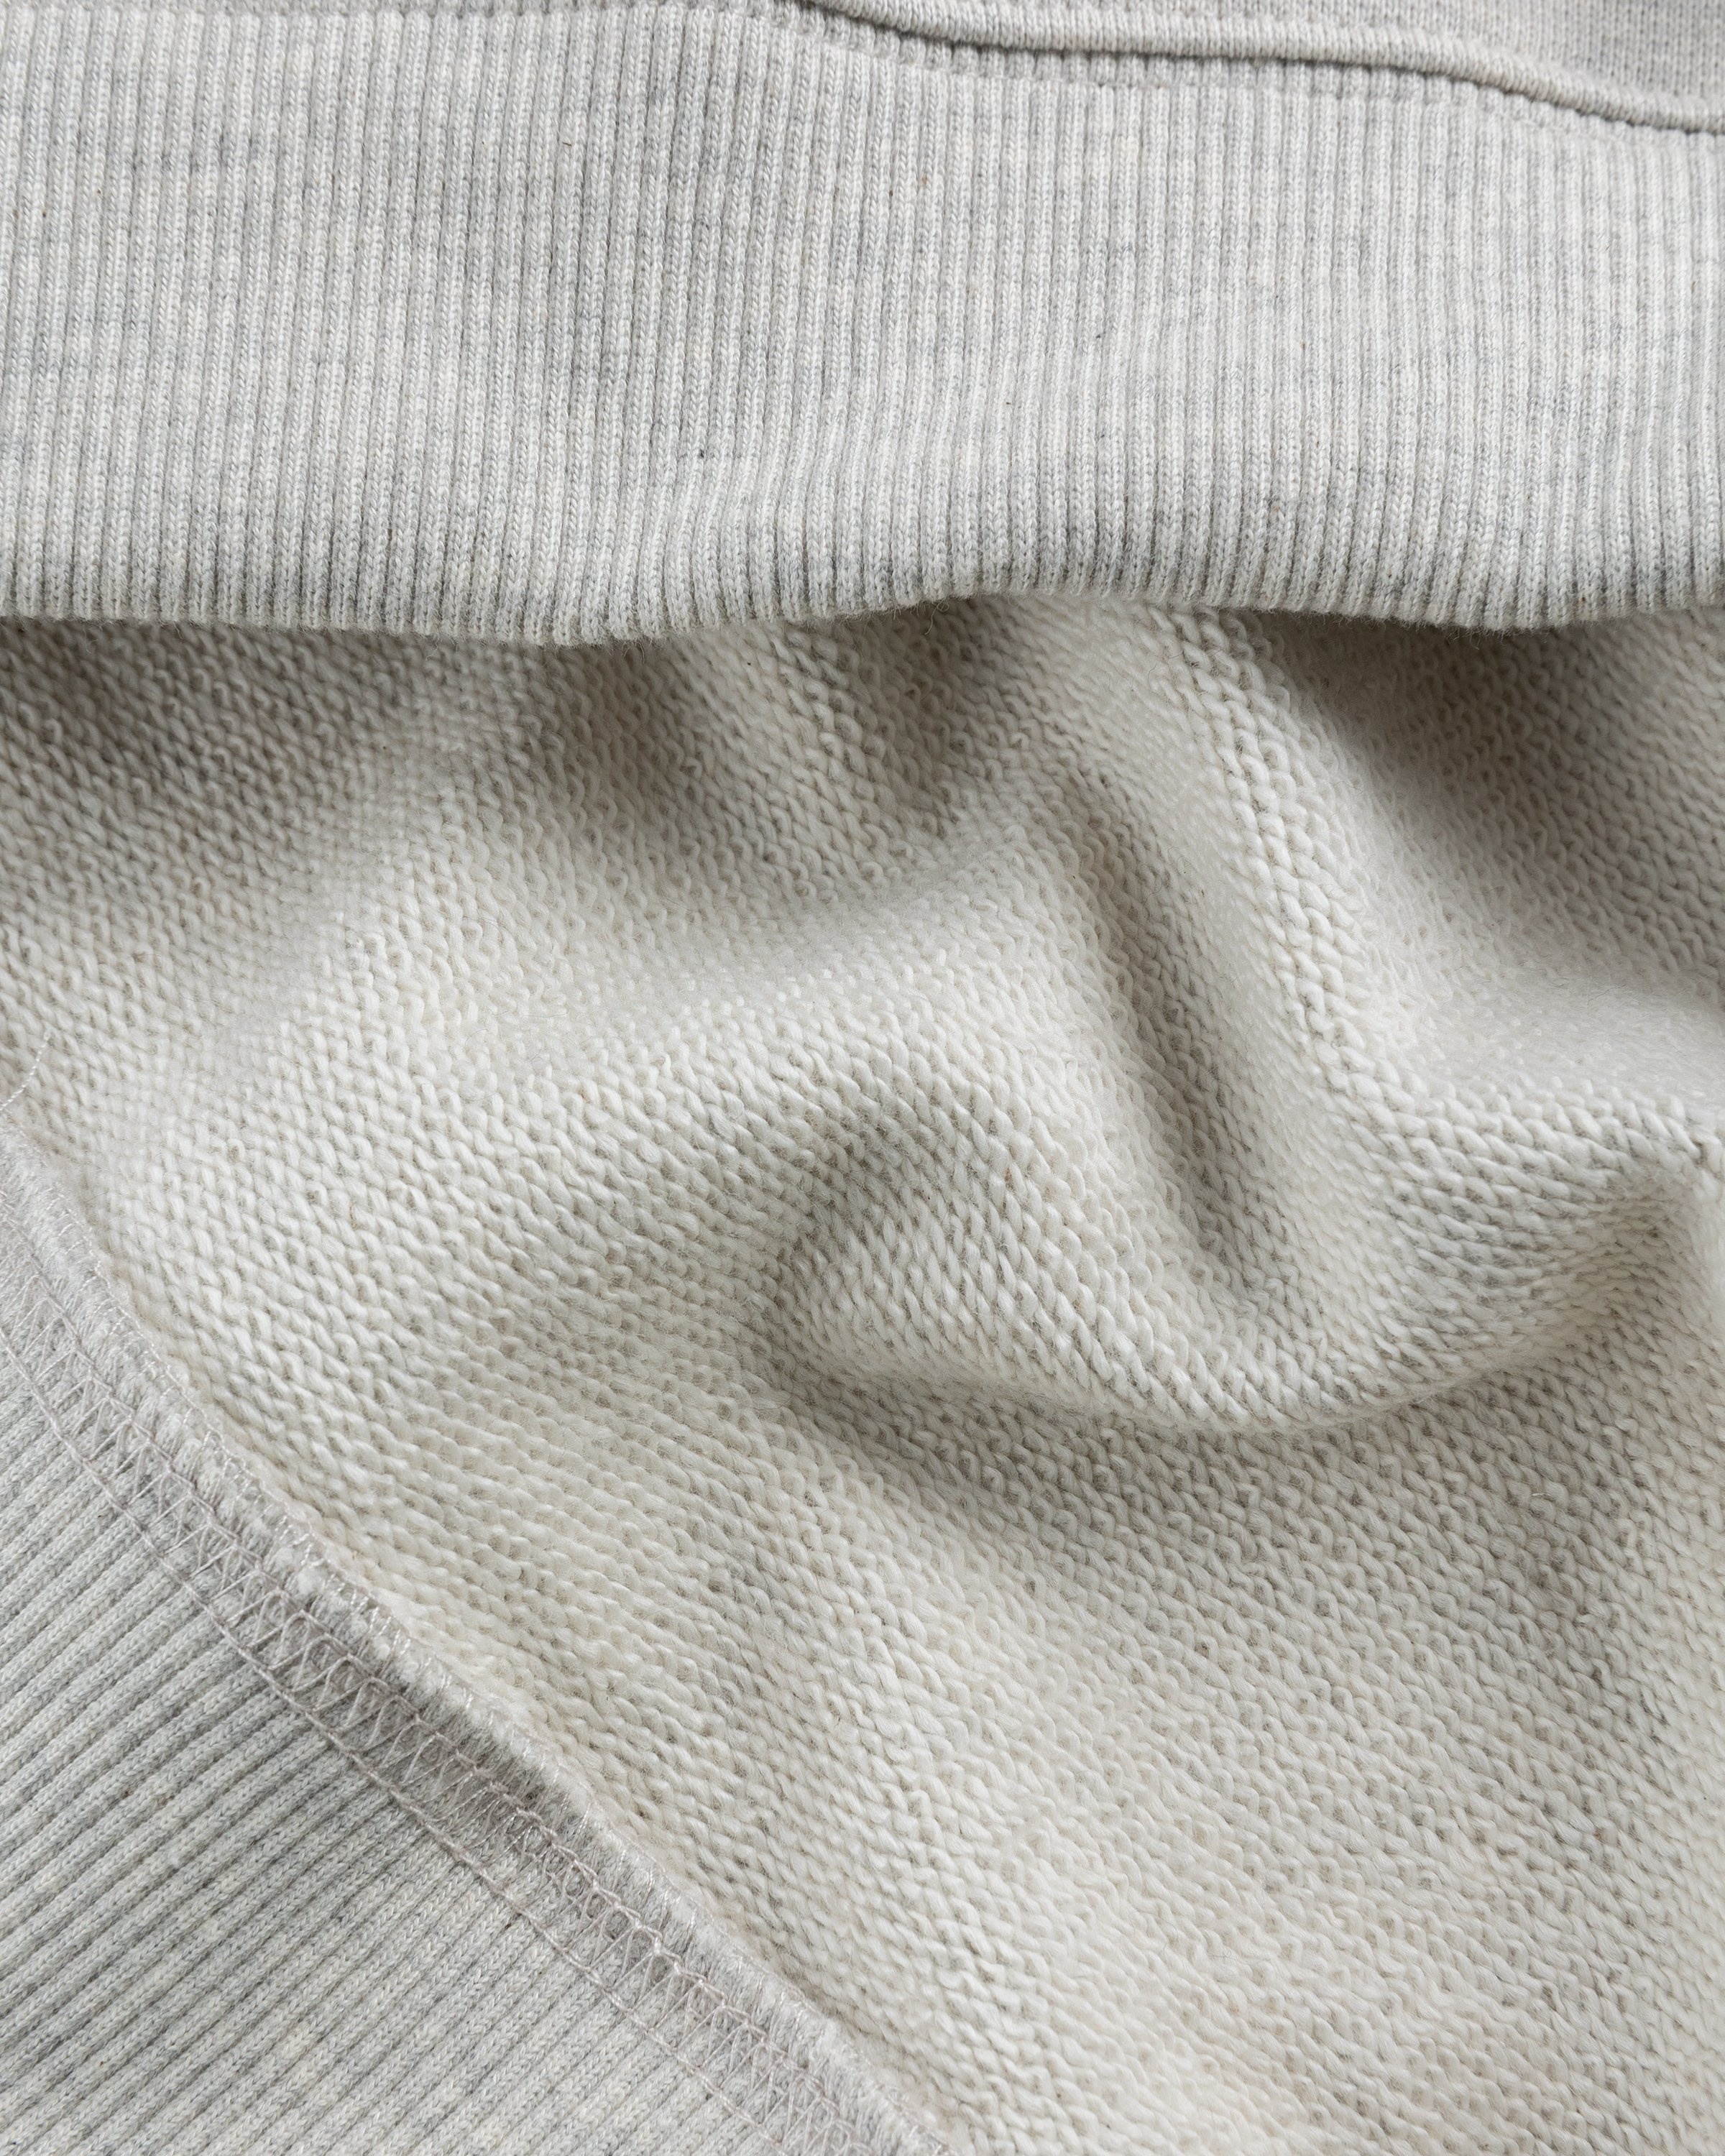 Kenzo – Boke Flower Crest Sweatshirt Pale Grey - Sweats - Grey - Image 4